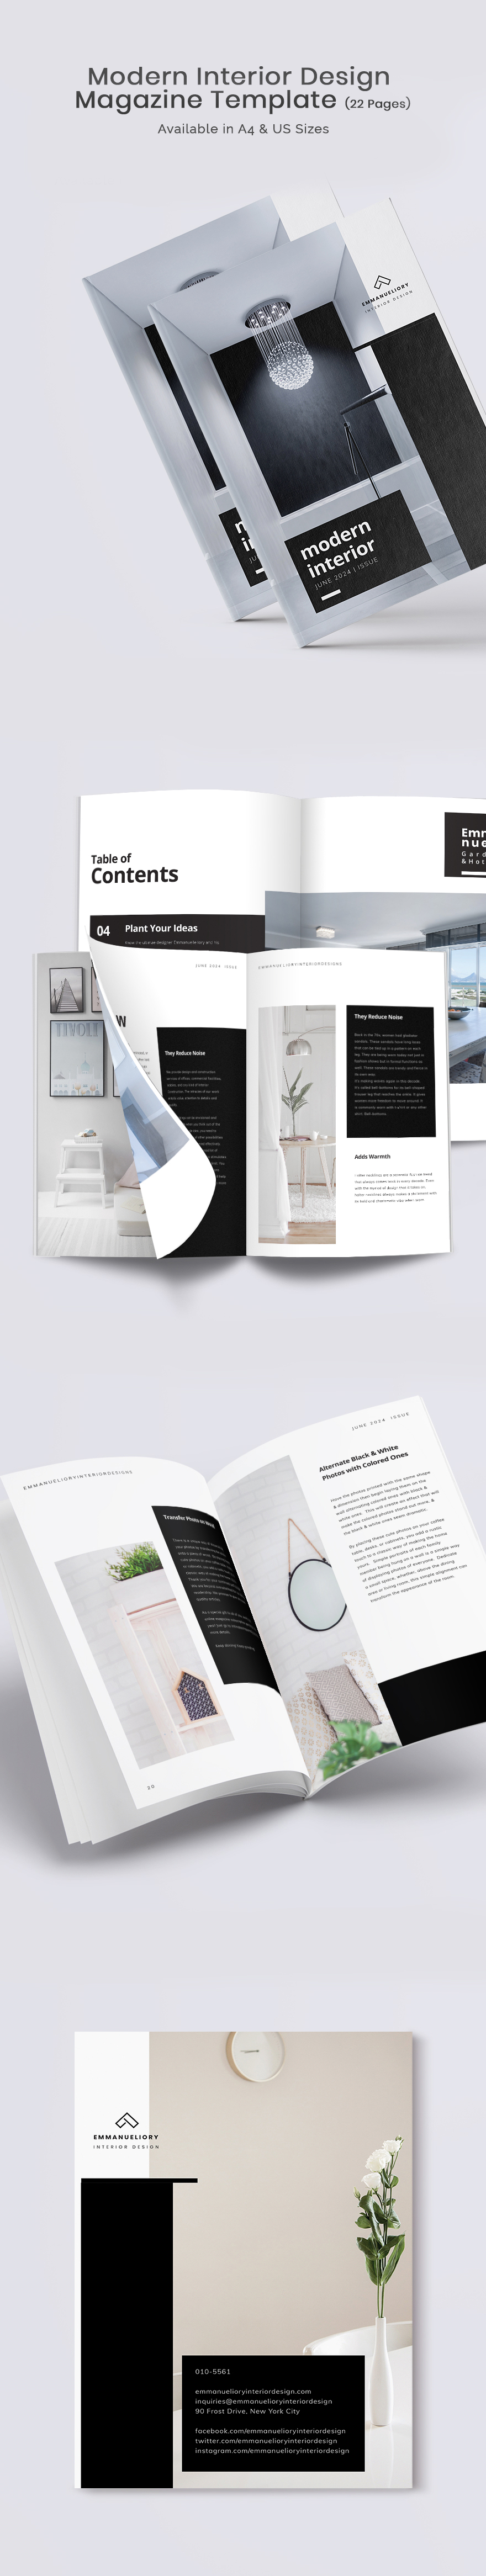 Modern Interior Design Magazine Template